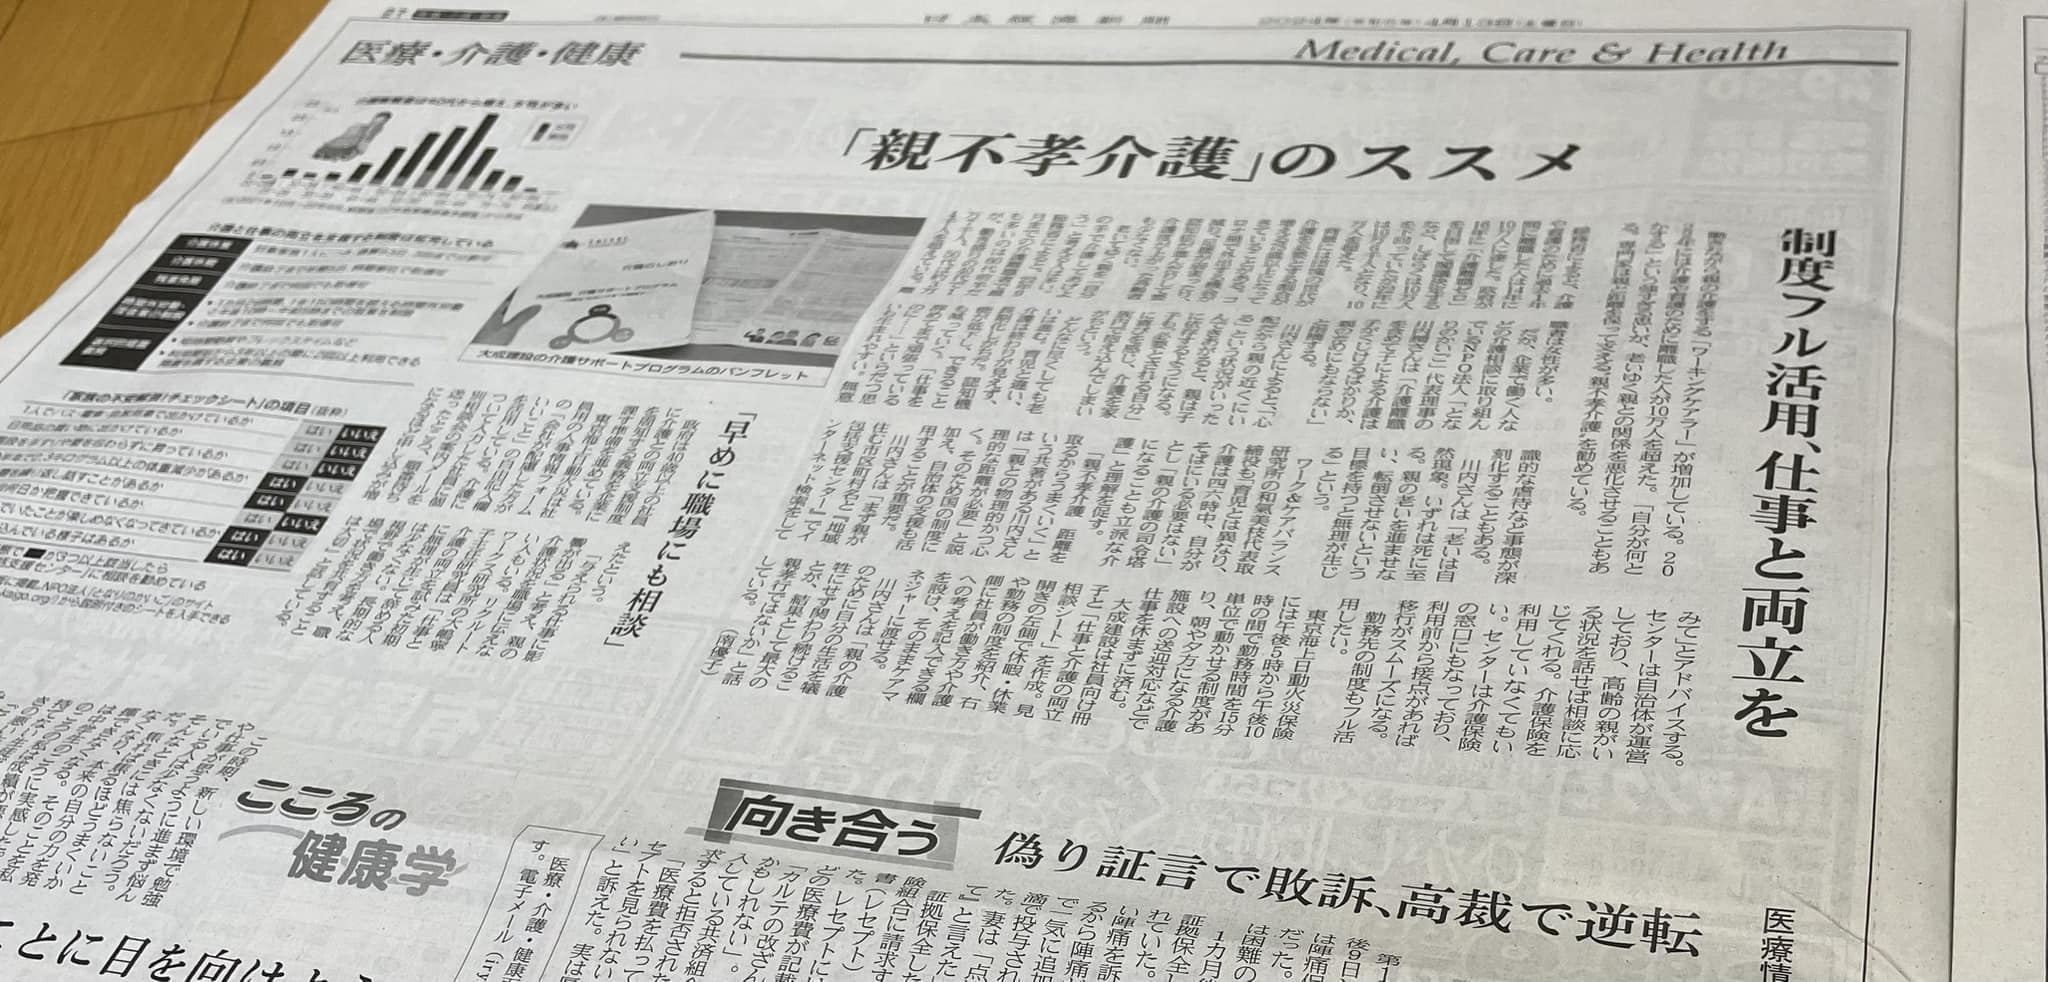 日本経済新聞『「親不孝介護」のススメ、制度フル活用、仕事と両立を』